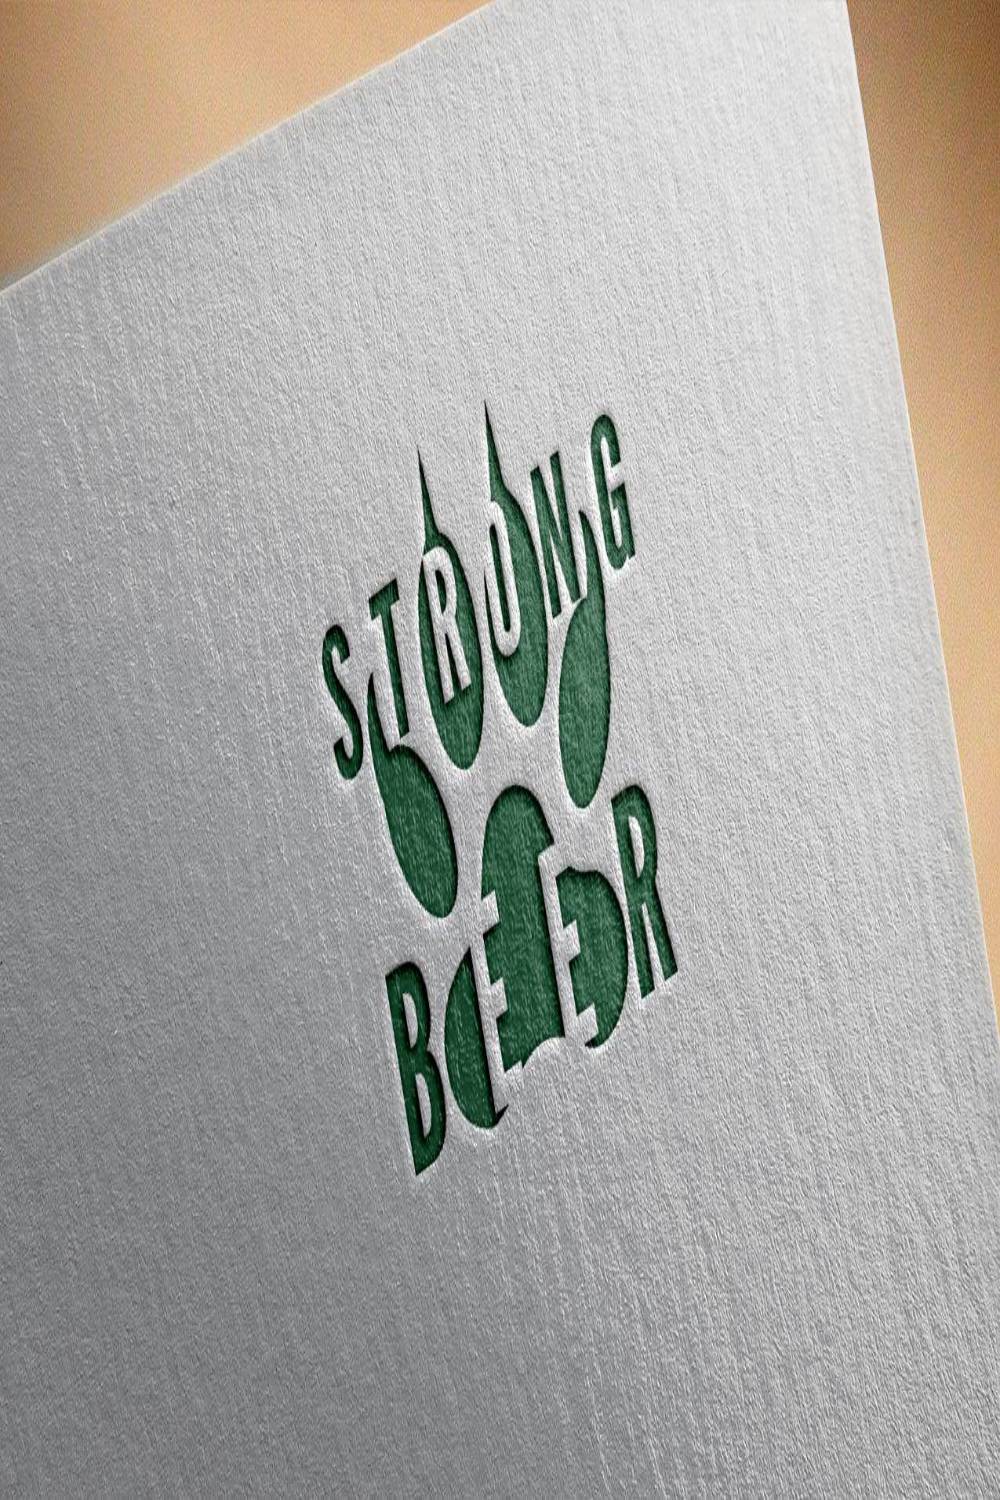 Strong Beer Logo Design pinterest image.